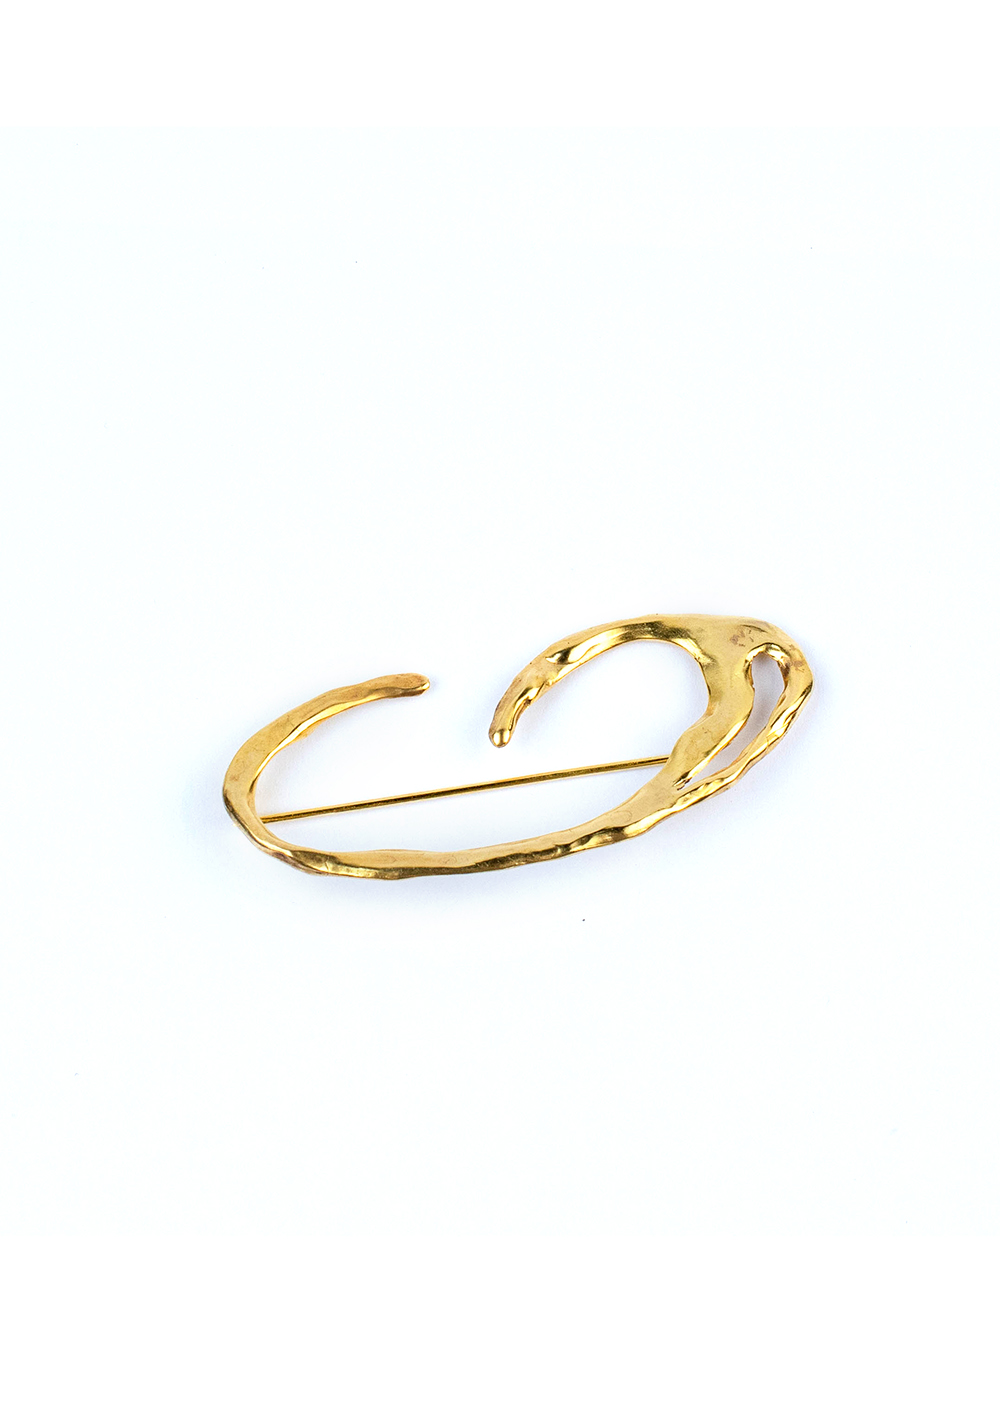 Broche Galatée – Doré à l’or fin 24 carats | Bresma | Label AÉ Paris - Image 13